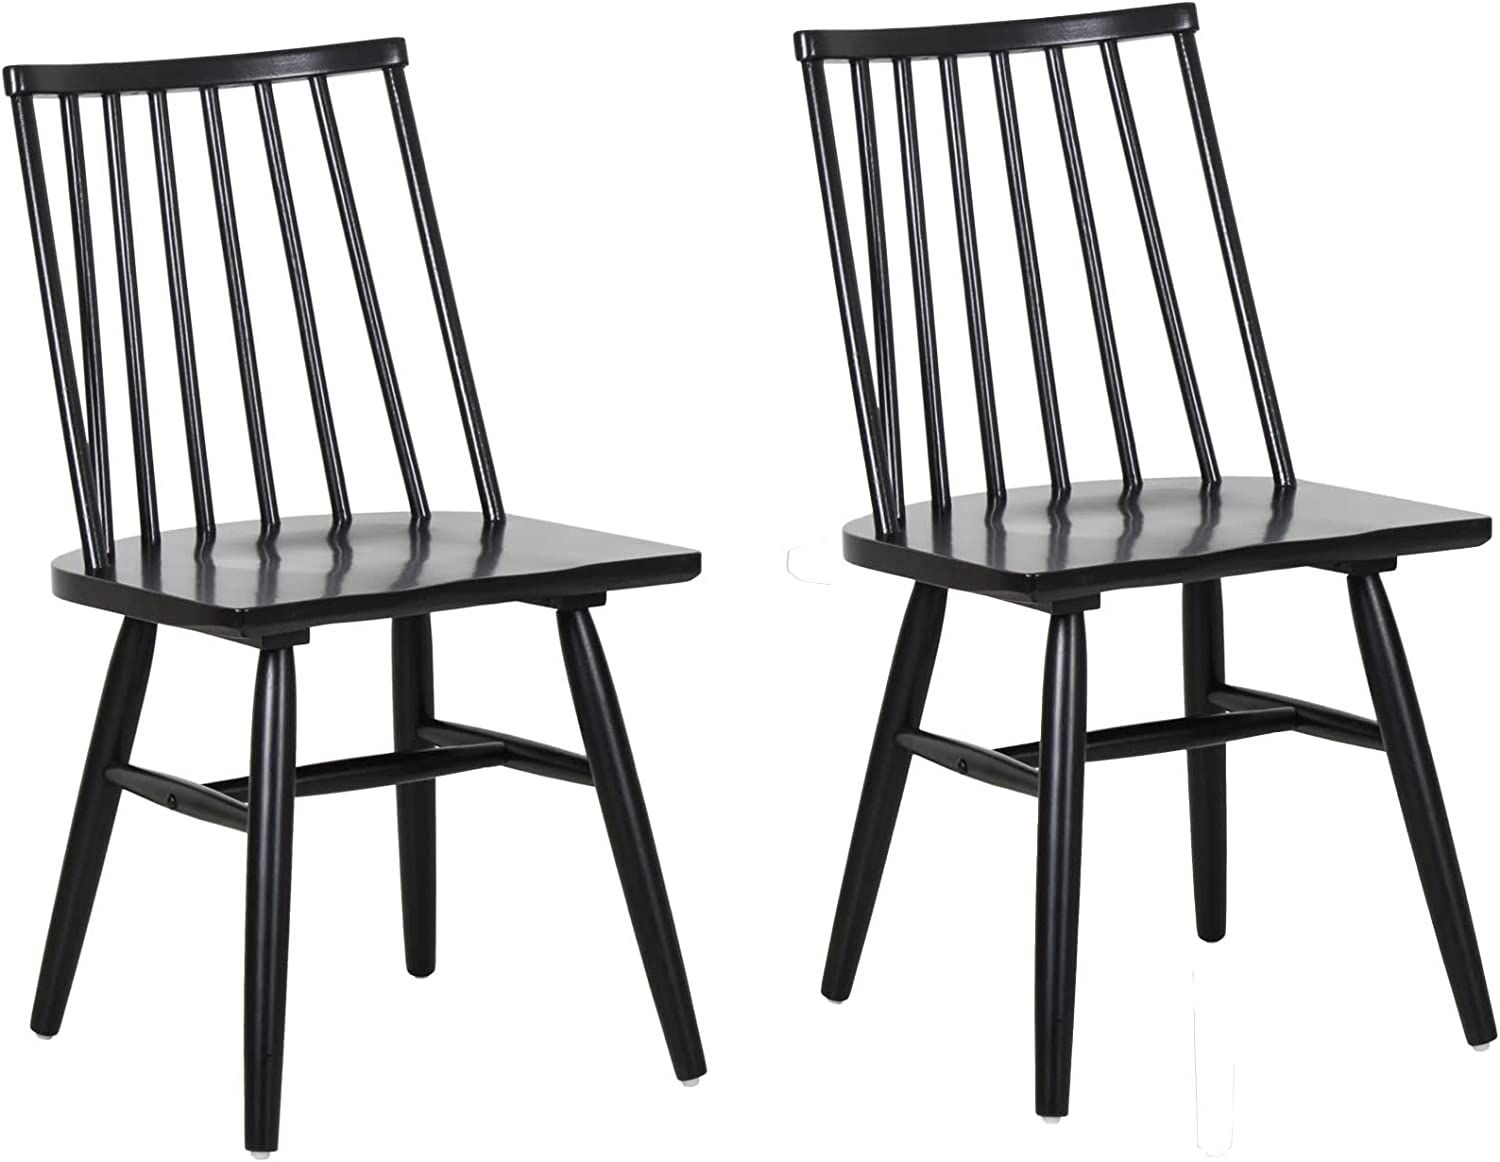 DYD Main 100% Solid Wood Dining Chairs - 21\u201DD x18\u201DW x32.5\u201DH Spindle Back Walnut Br... | Walmart (US)